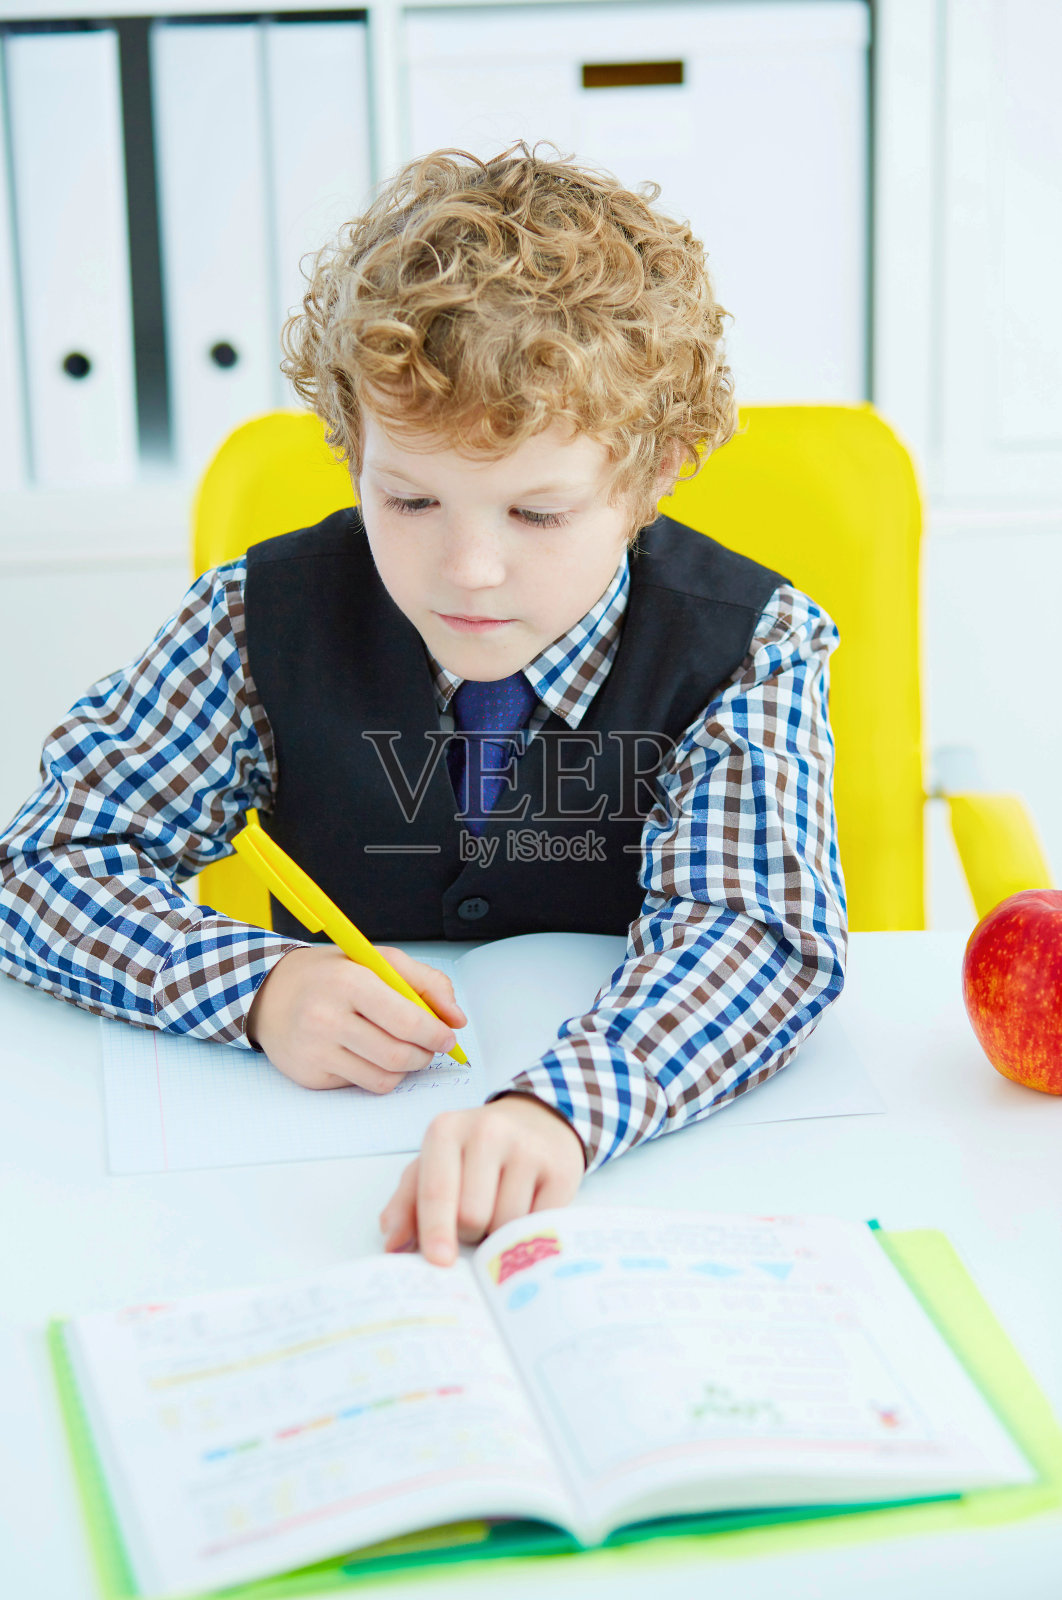 一个白人小男孩坐在桌子旁在笔记本上写字。红苹果挨着桌子。照片摄影图片